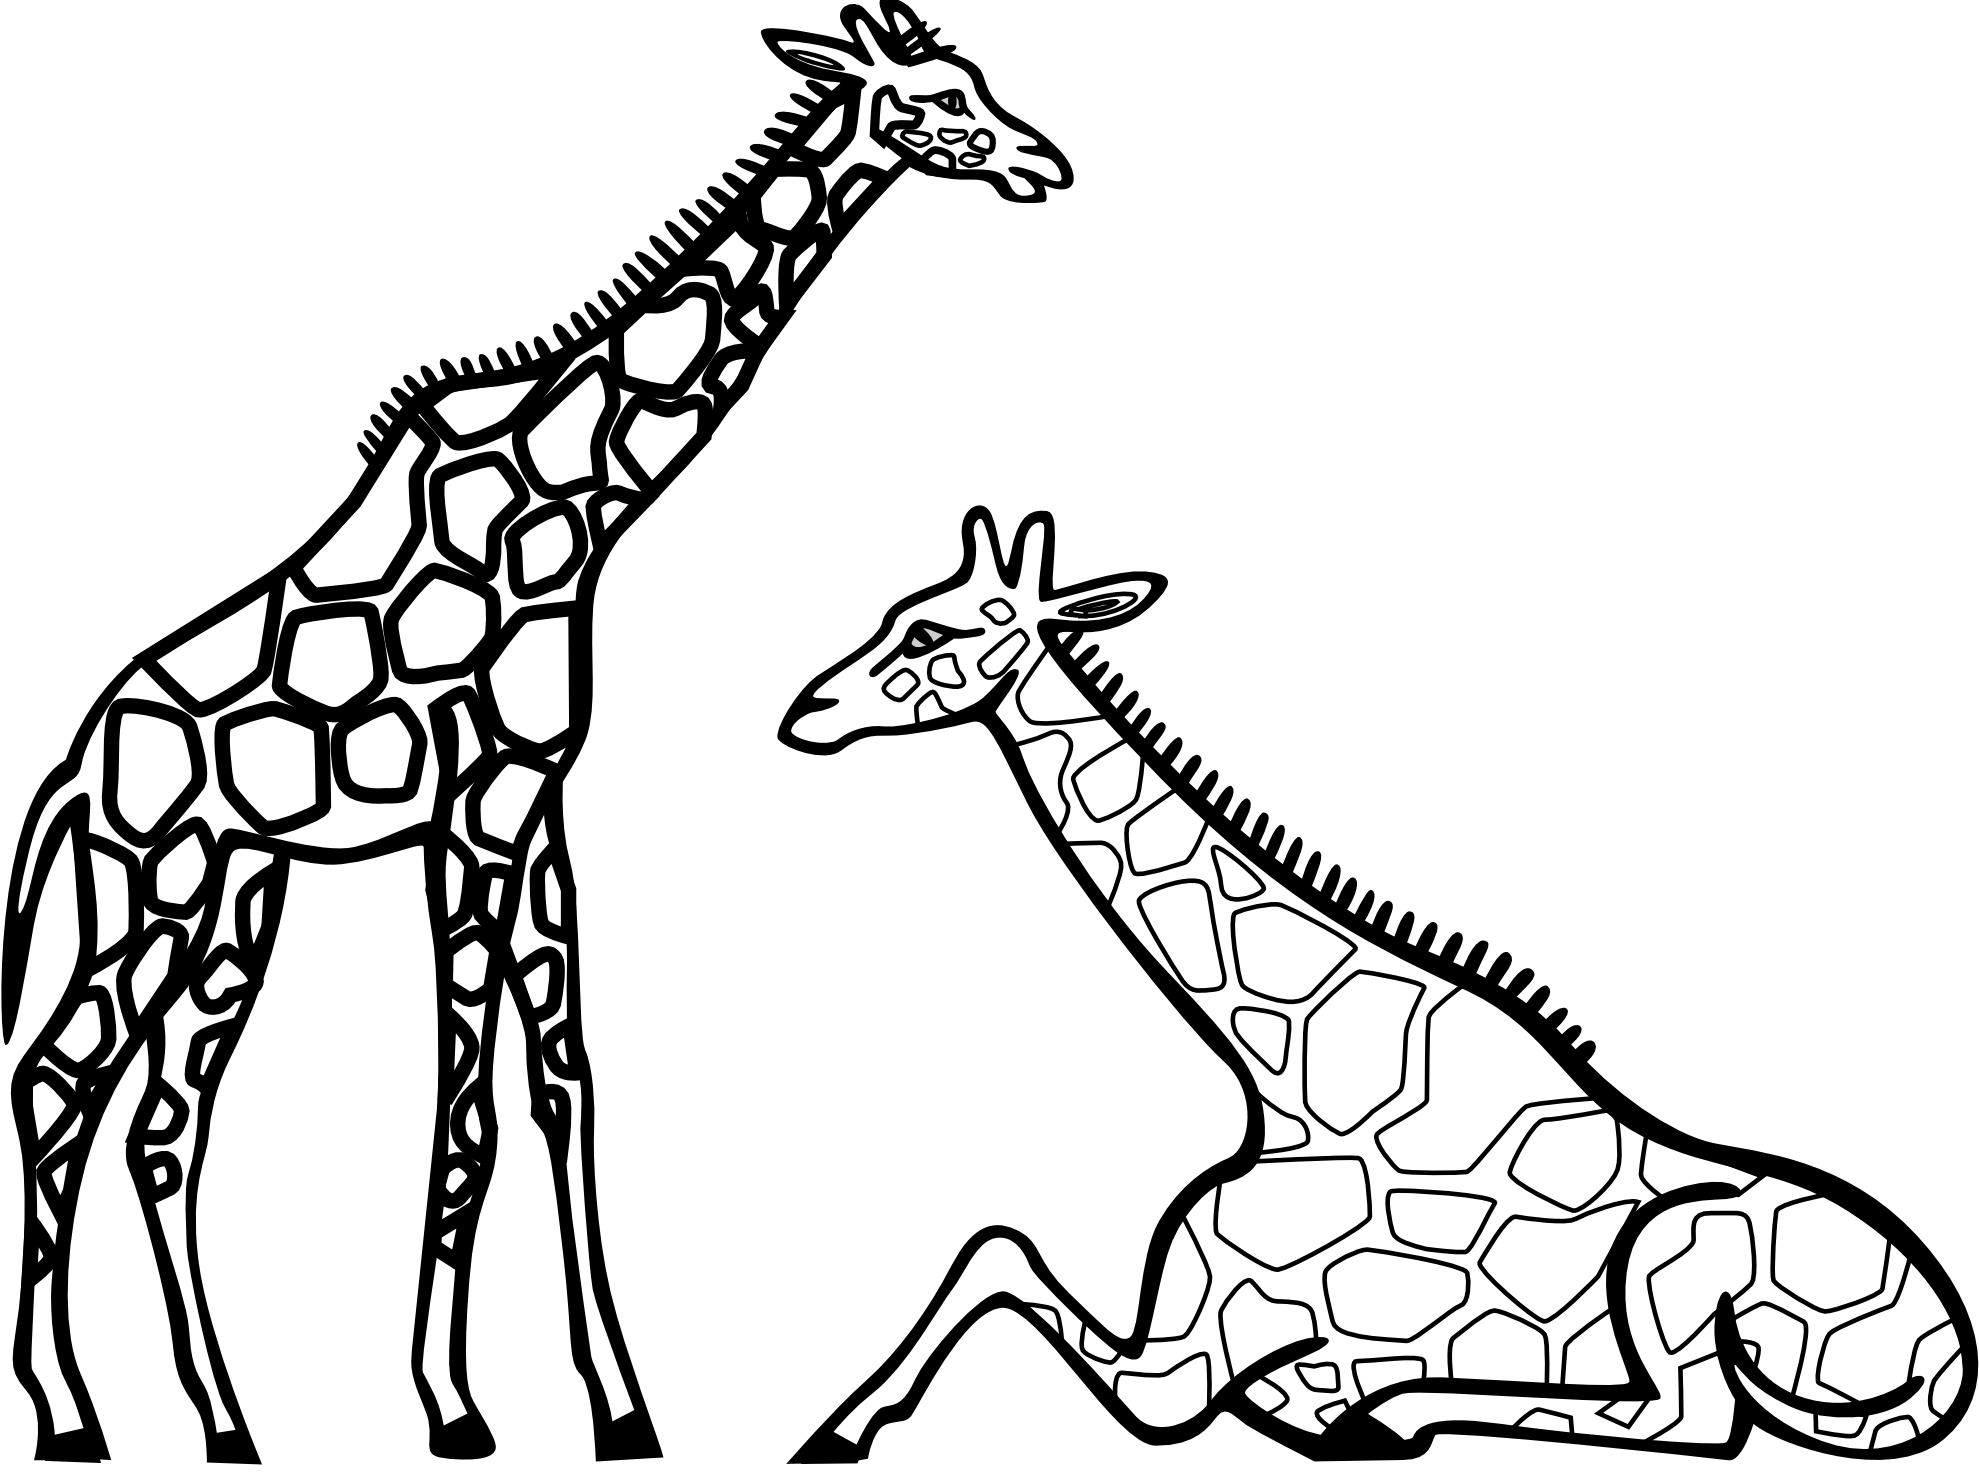 Baby giraffe clipart black and white